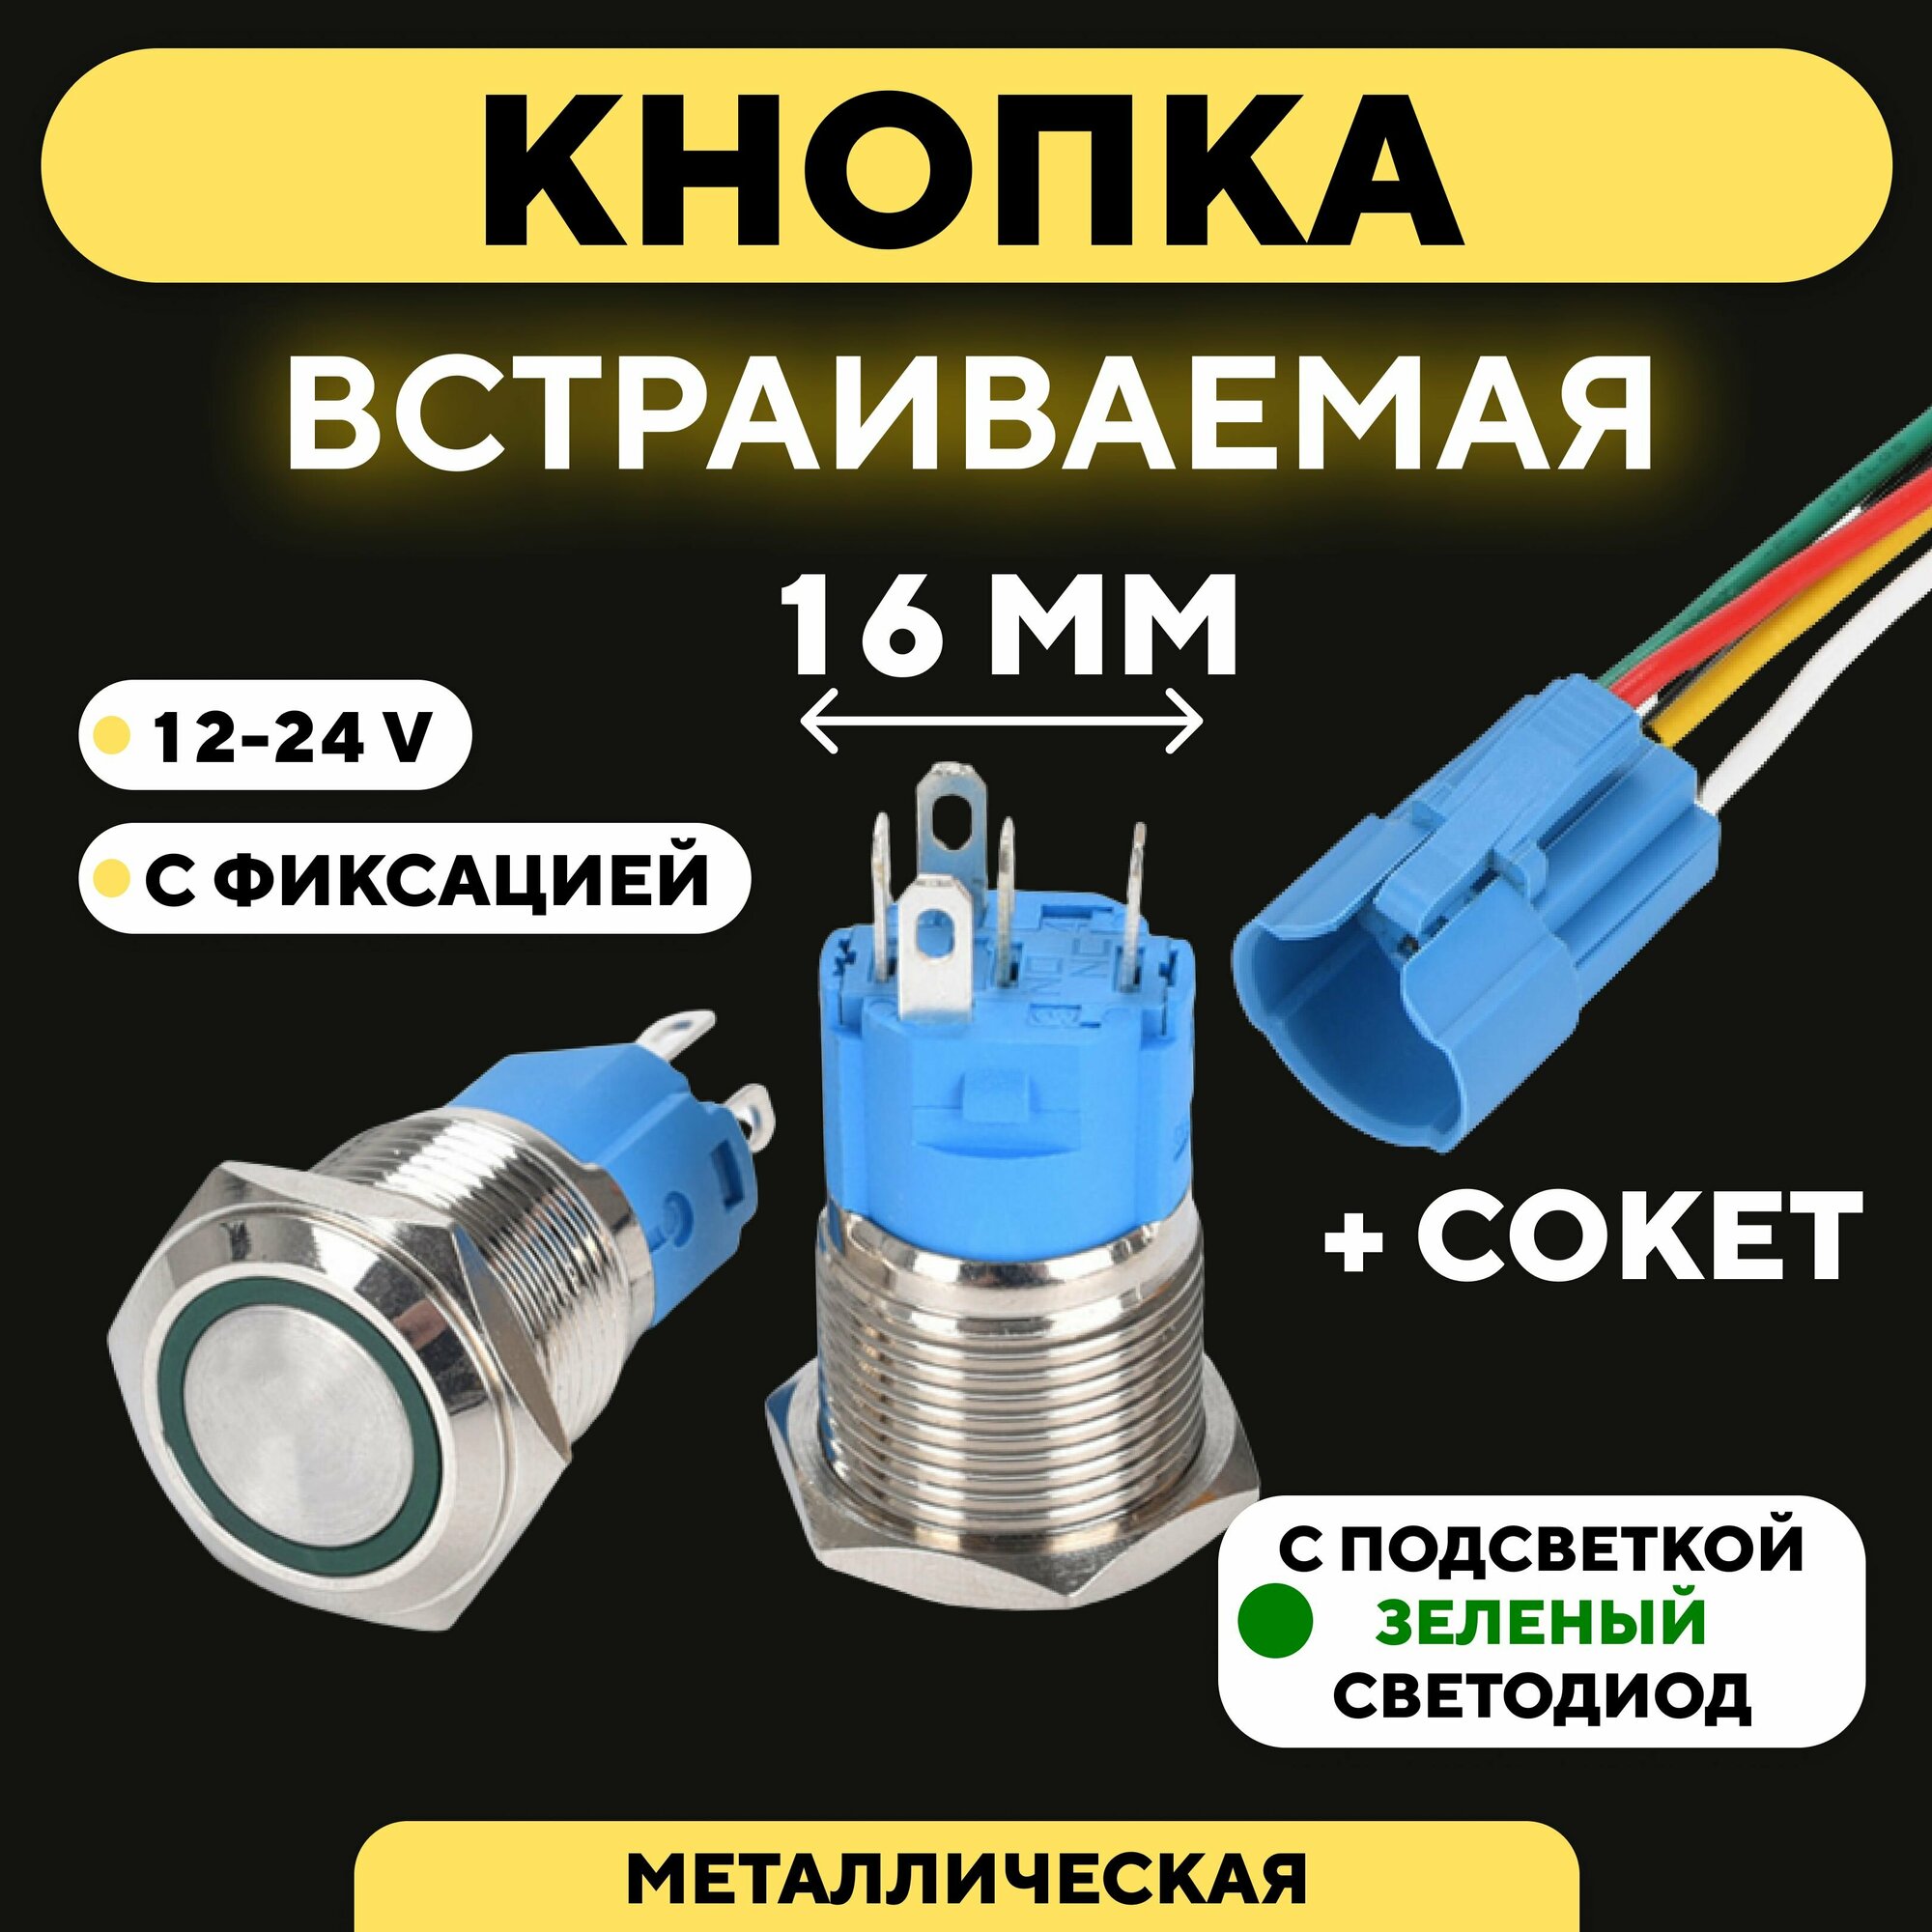 Кнопка для монтажа на корпус металлическая с индикатором (12-24 В 16 мм) / С фиксацией / Круг / Зеленый